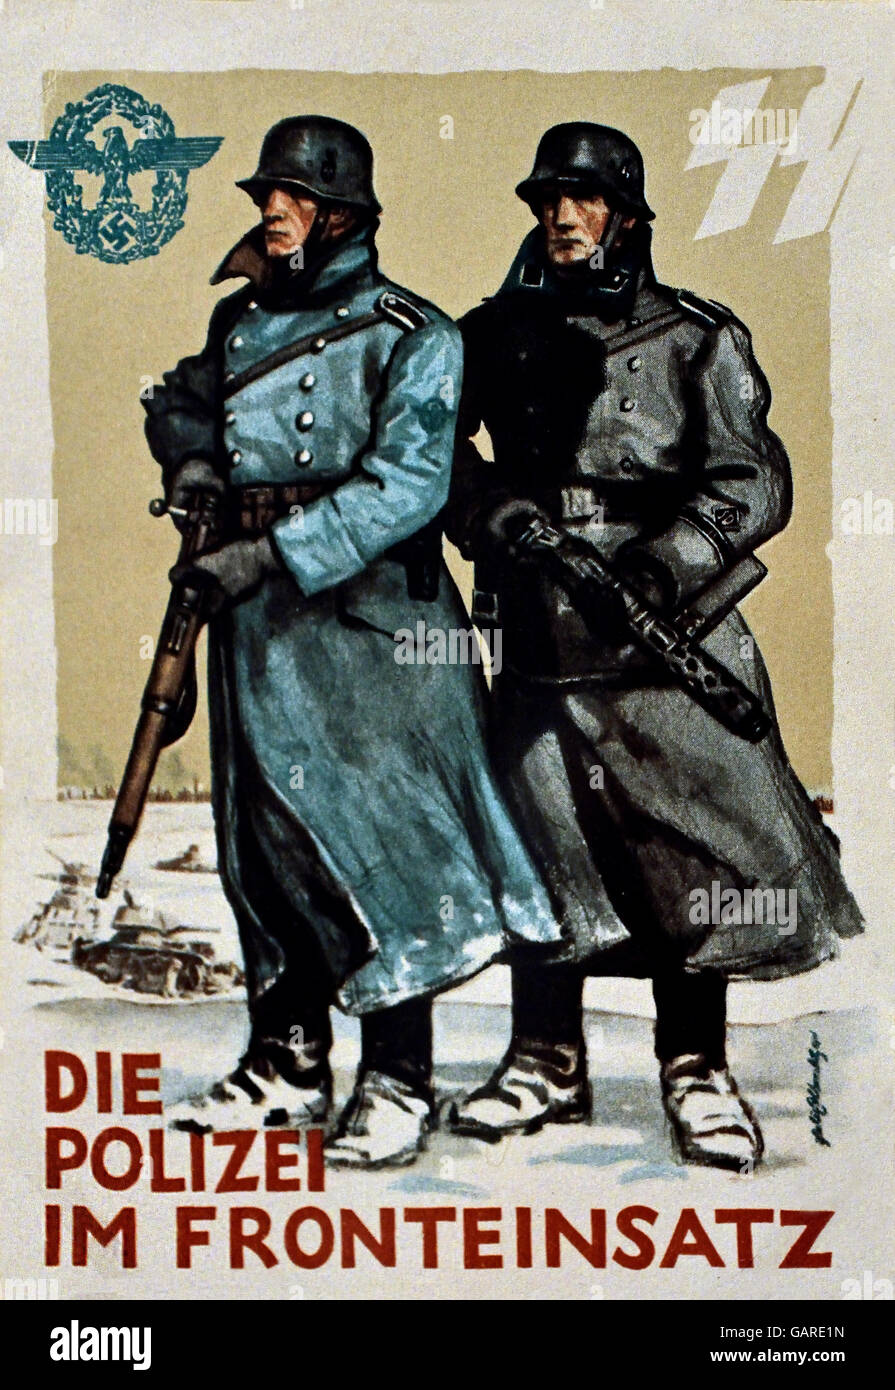 Die Polizei im Fronteinsatz - Polizia Unità anteriore Berlino Germania Nazista ( cartolina per la polizia tedesca giorno 1942 ) Foto Stock